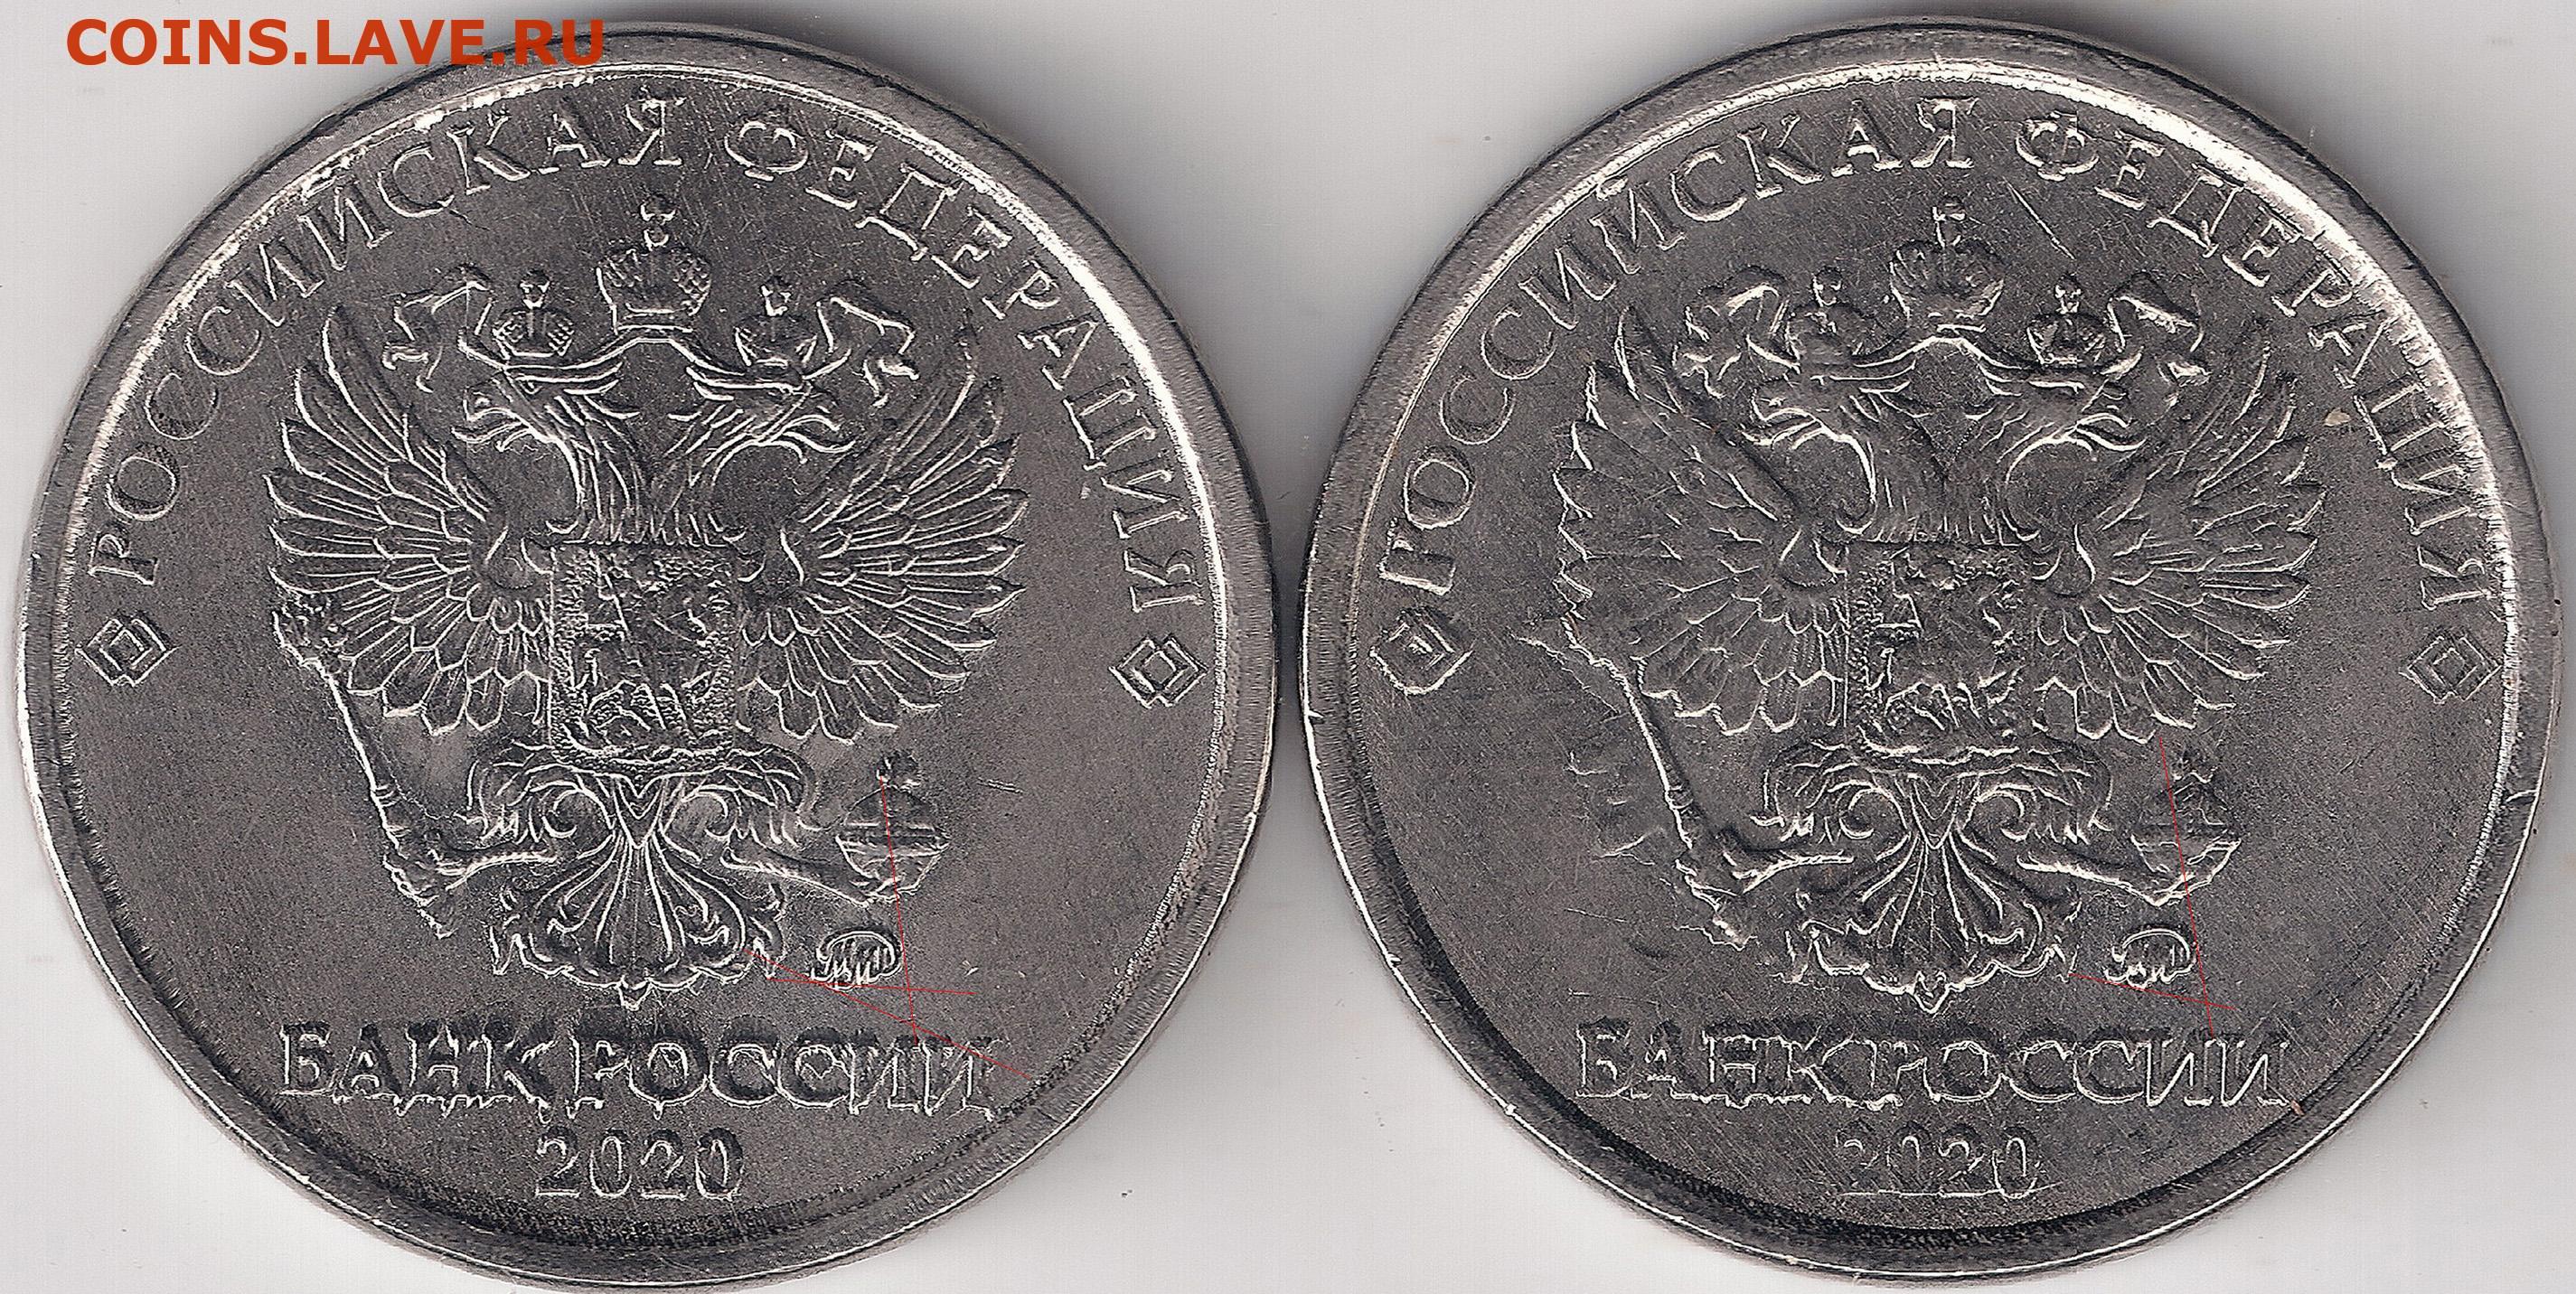 Сколько стоит note coin. 2 Рубля 2009 СПМД шт н-4.24е. 2 Рубля 2009 СПМД (магниная). 2 Рубля 2009 СПМД магнитная. Монета 2 рубля 2014.